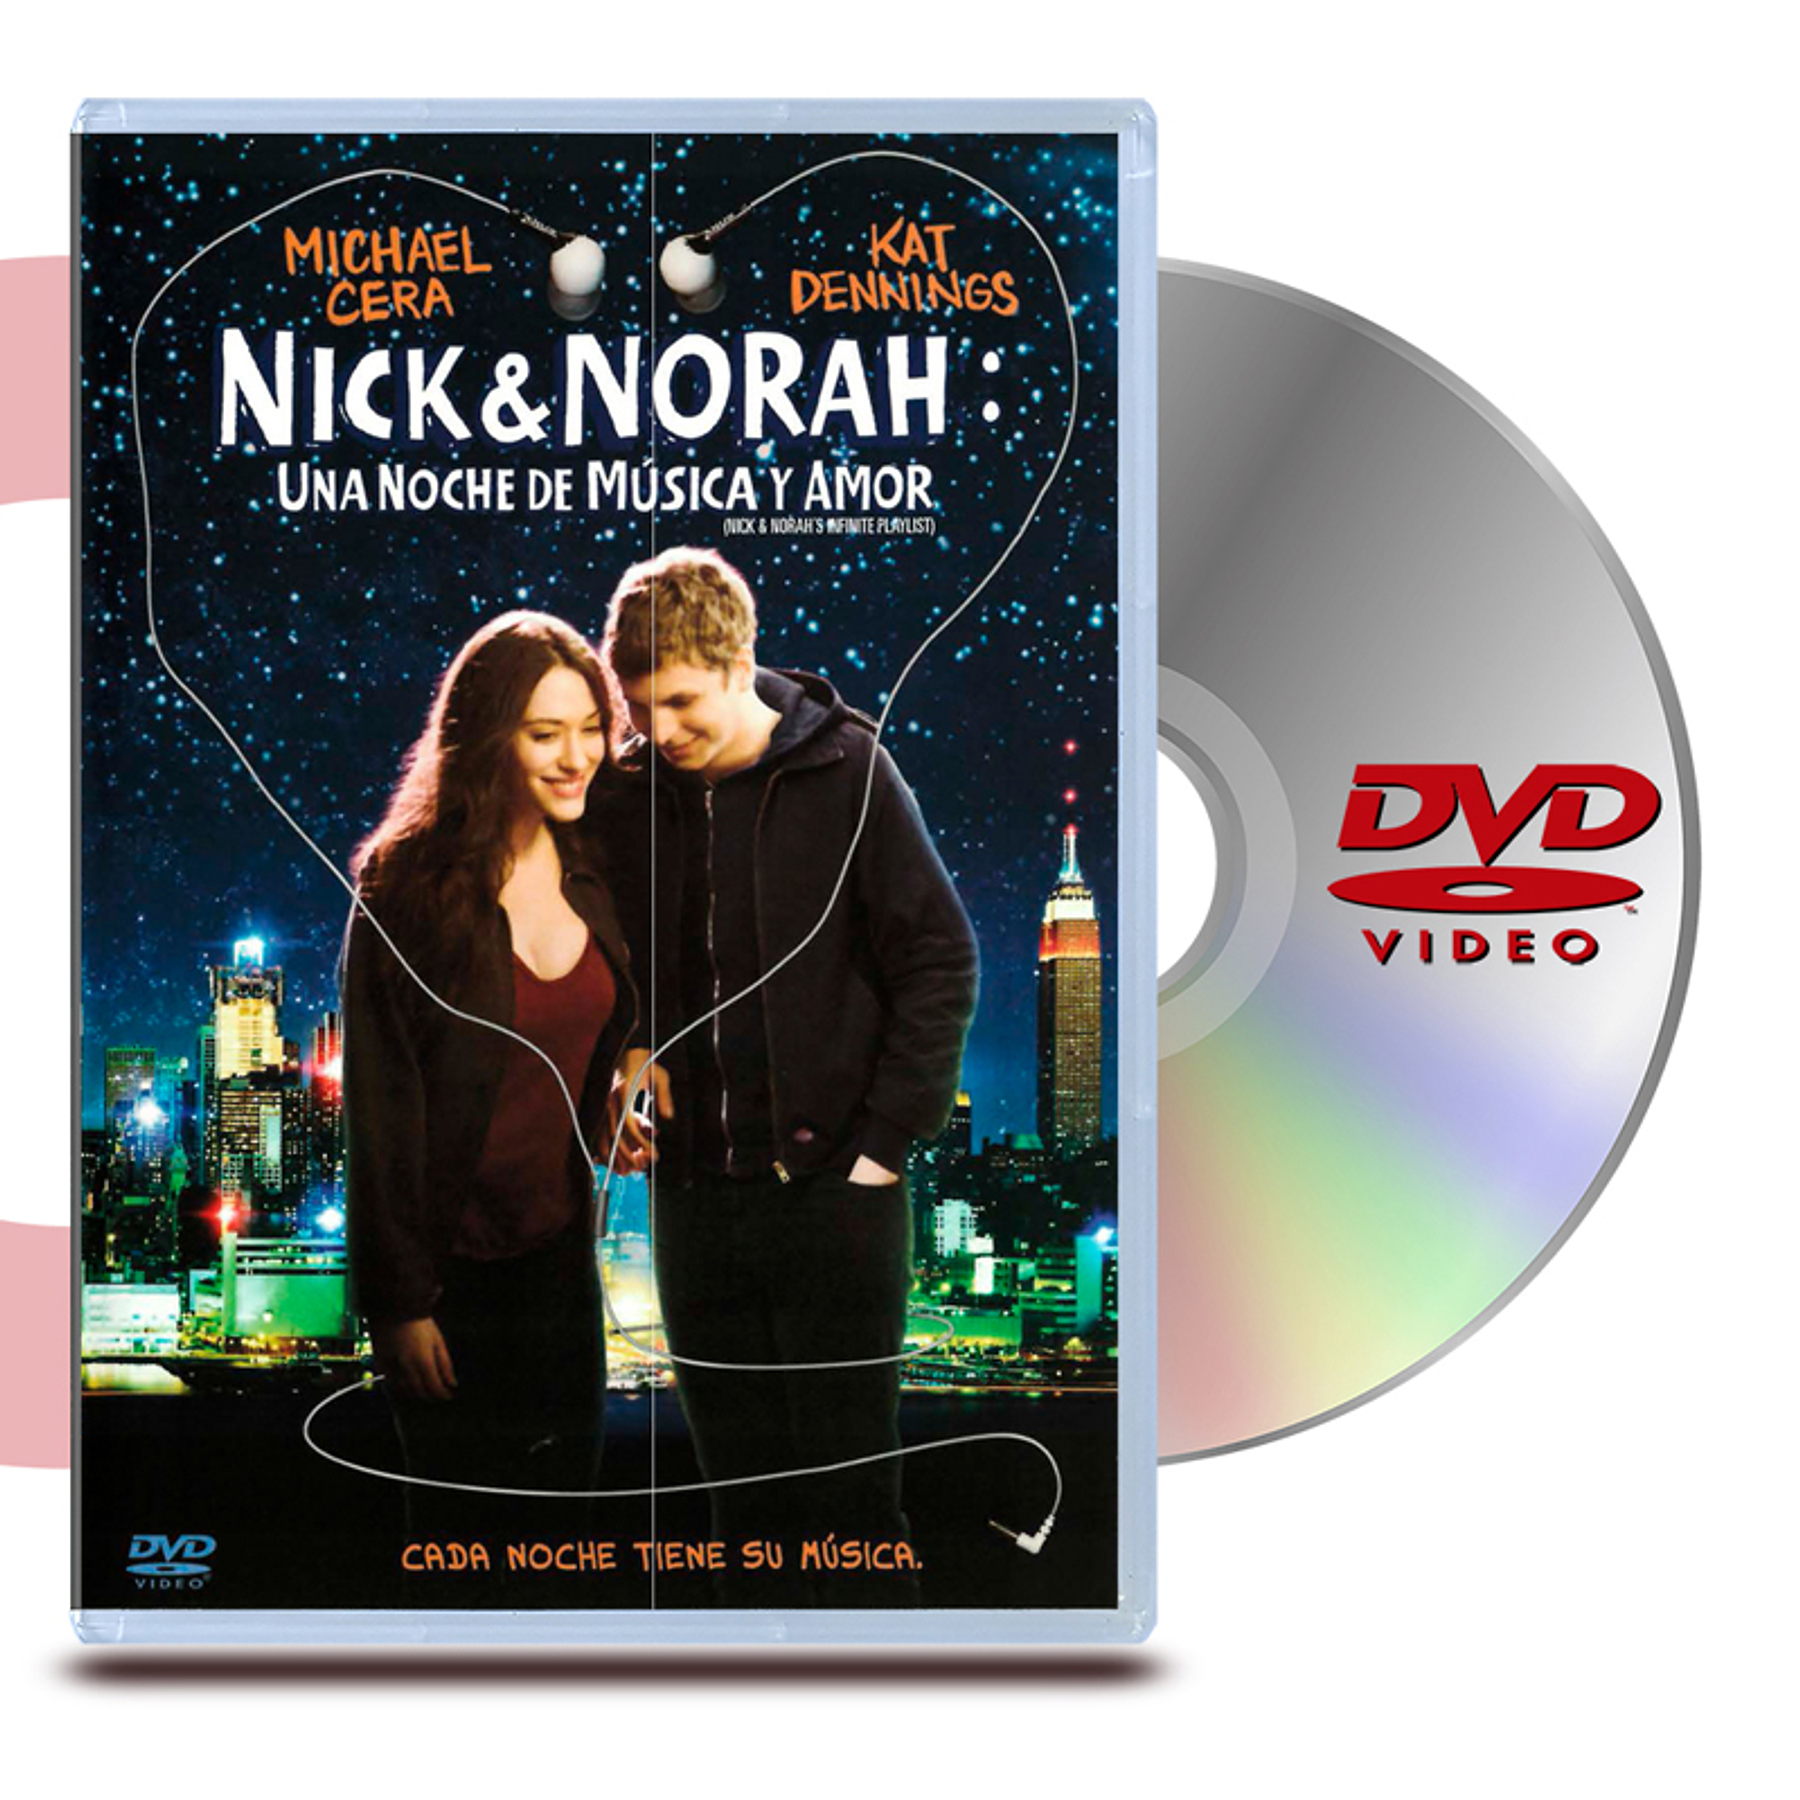 DVD Nick & Norah: Una noche de musica y amor